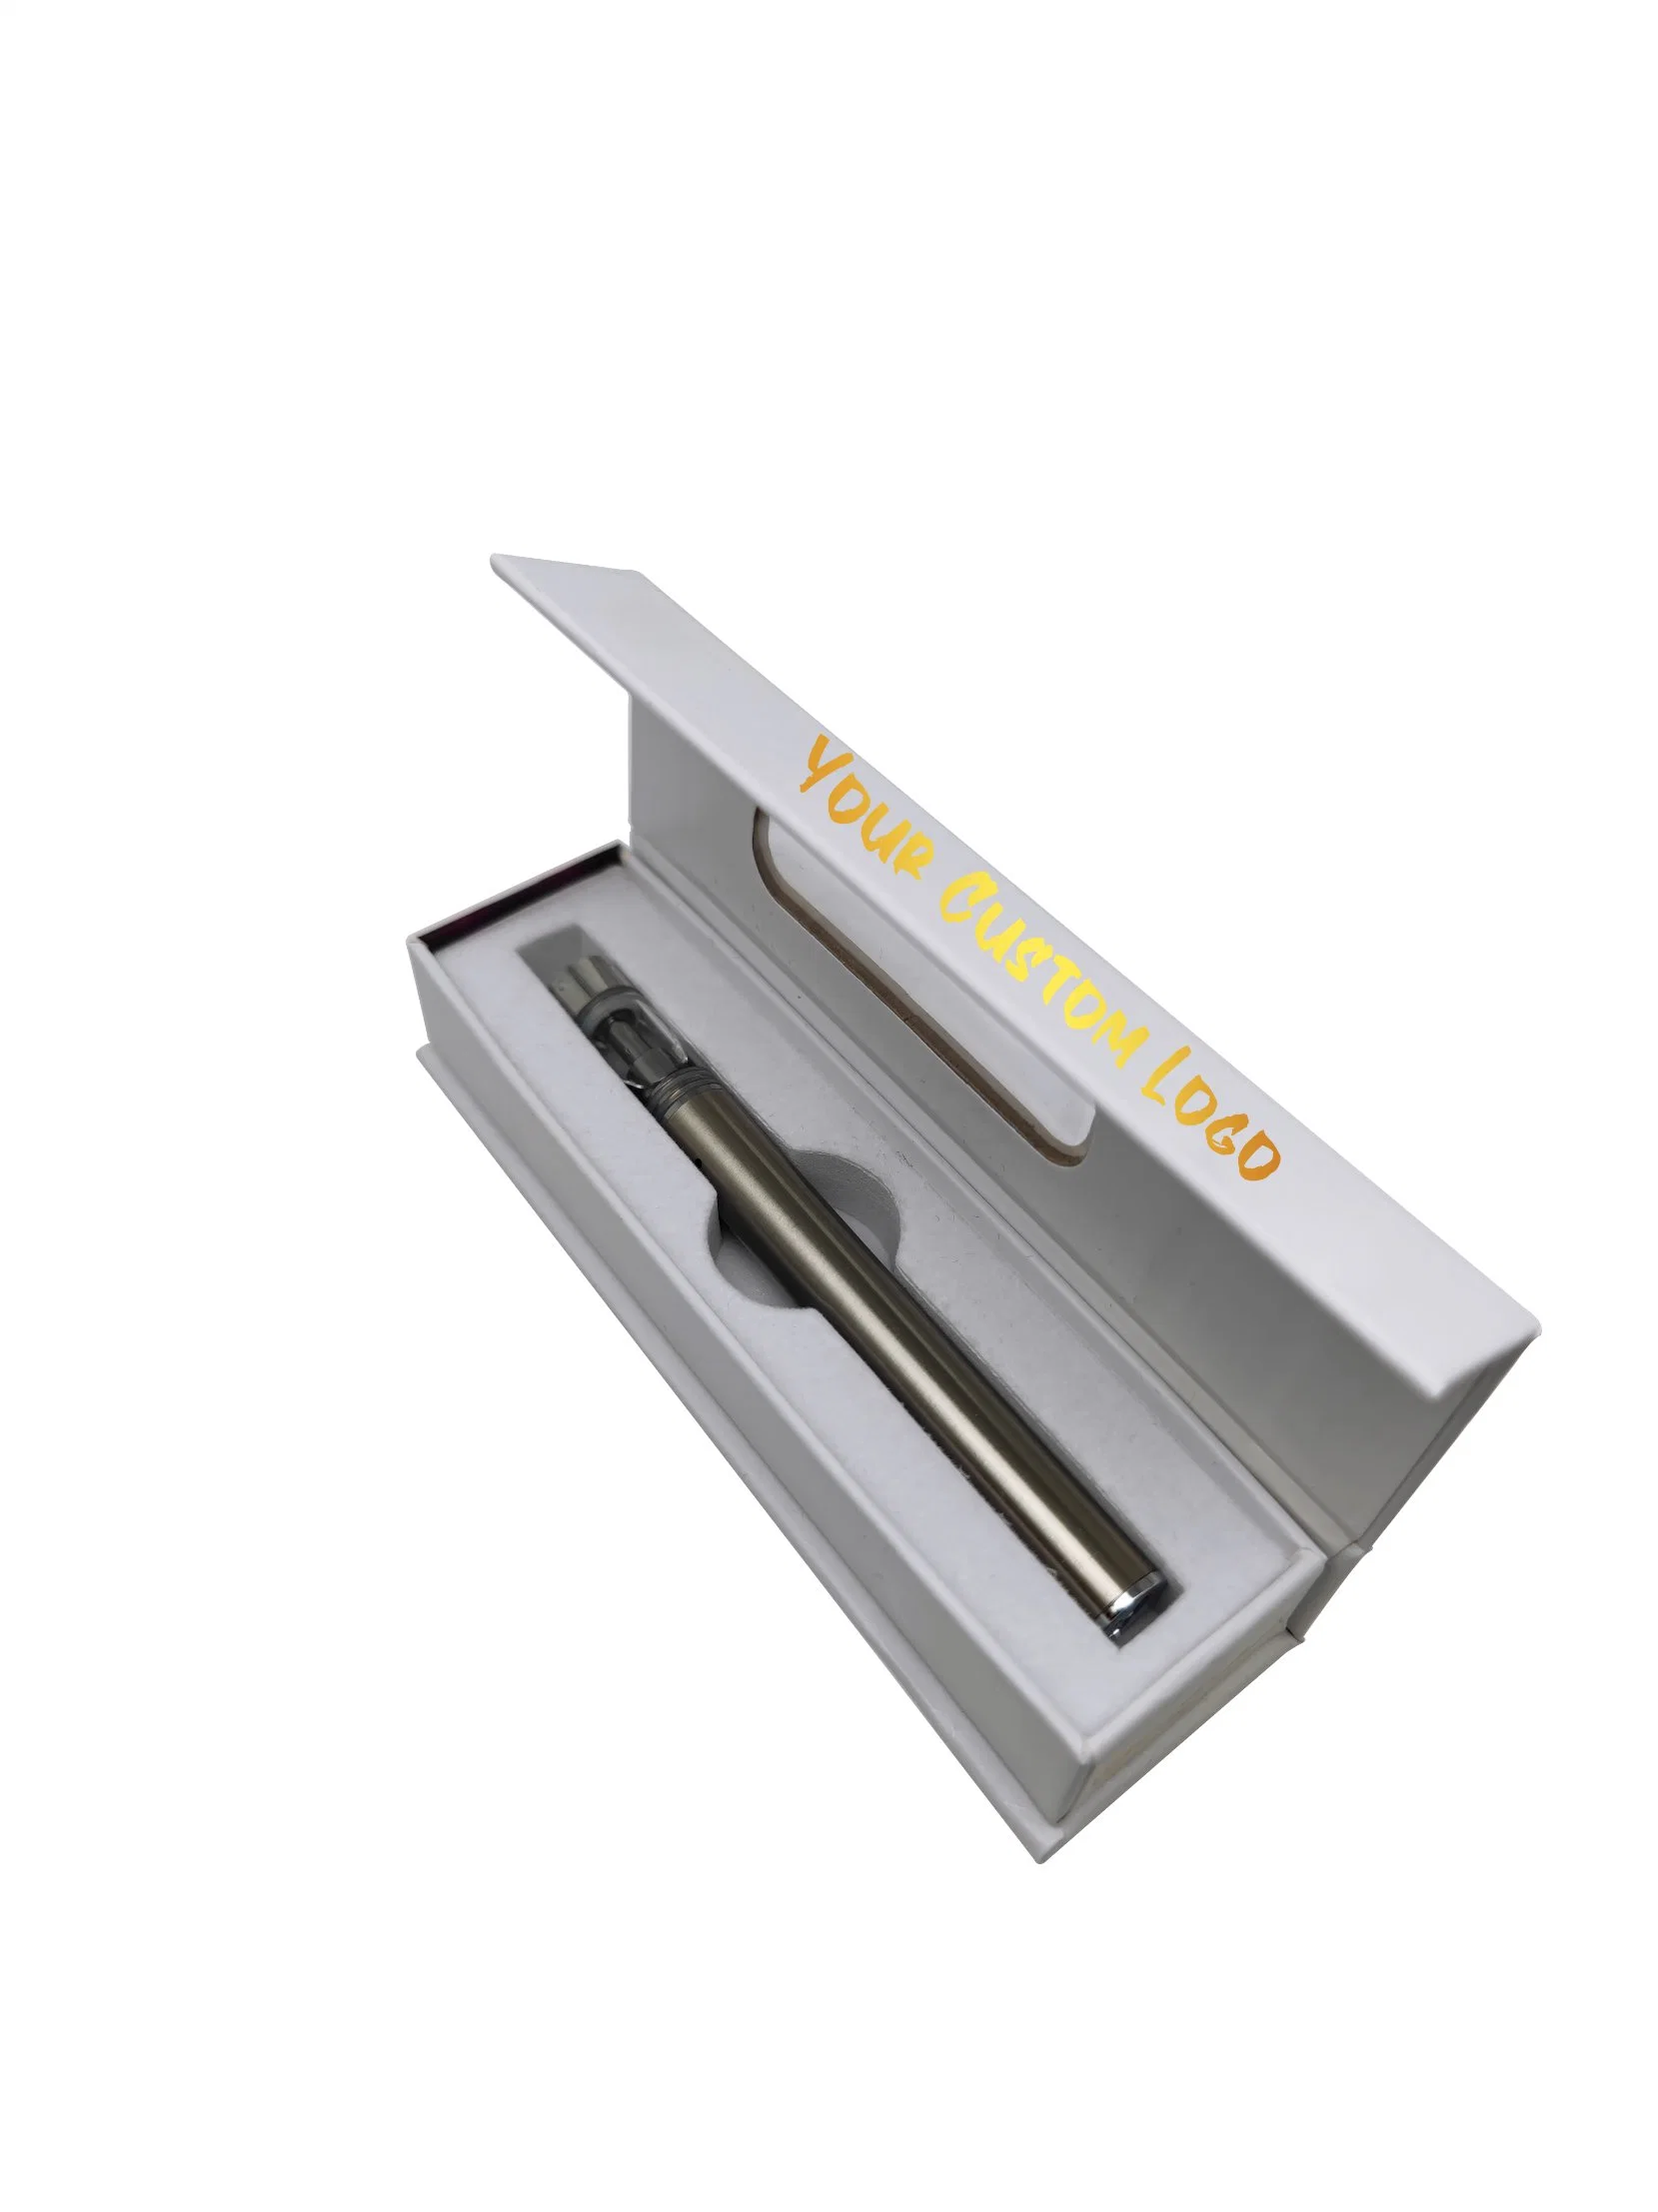 Makeon Vape stylo jetable personnalisé à l'emballage Panier boîtes boîte magnétique pour batterie sac e-cigarette &amp; Case Emballage OEM